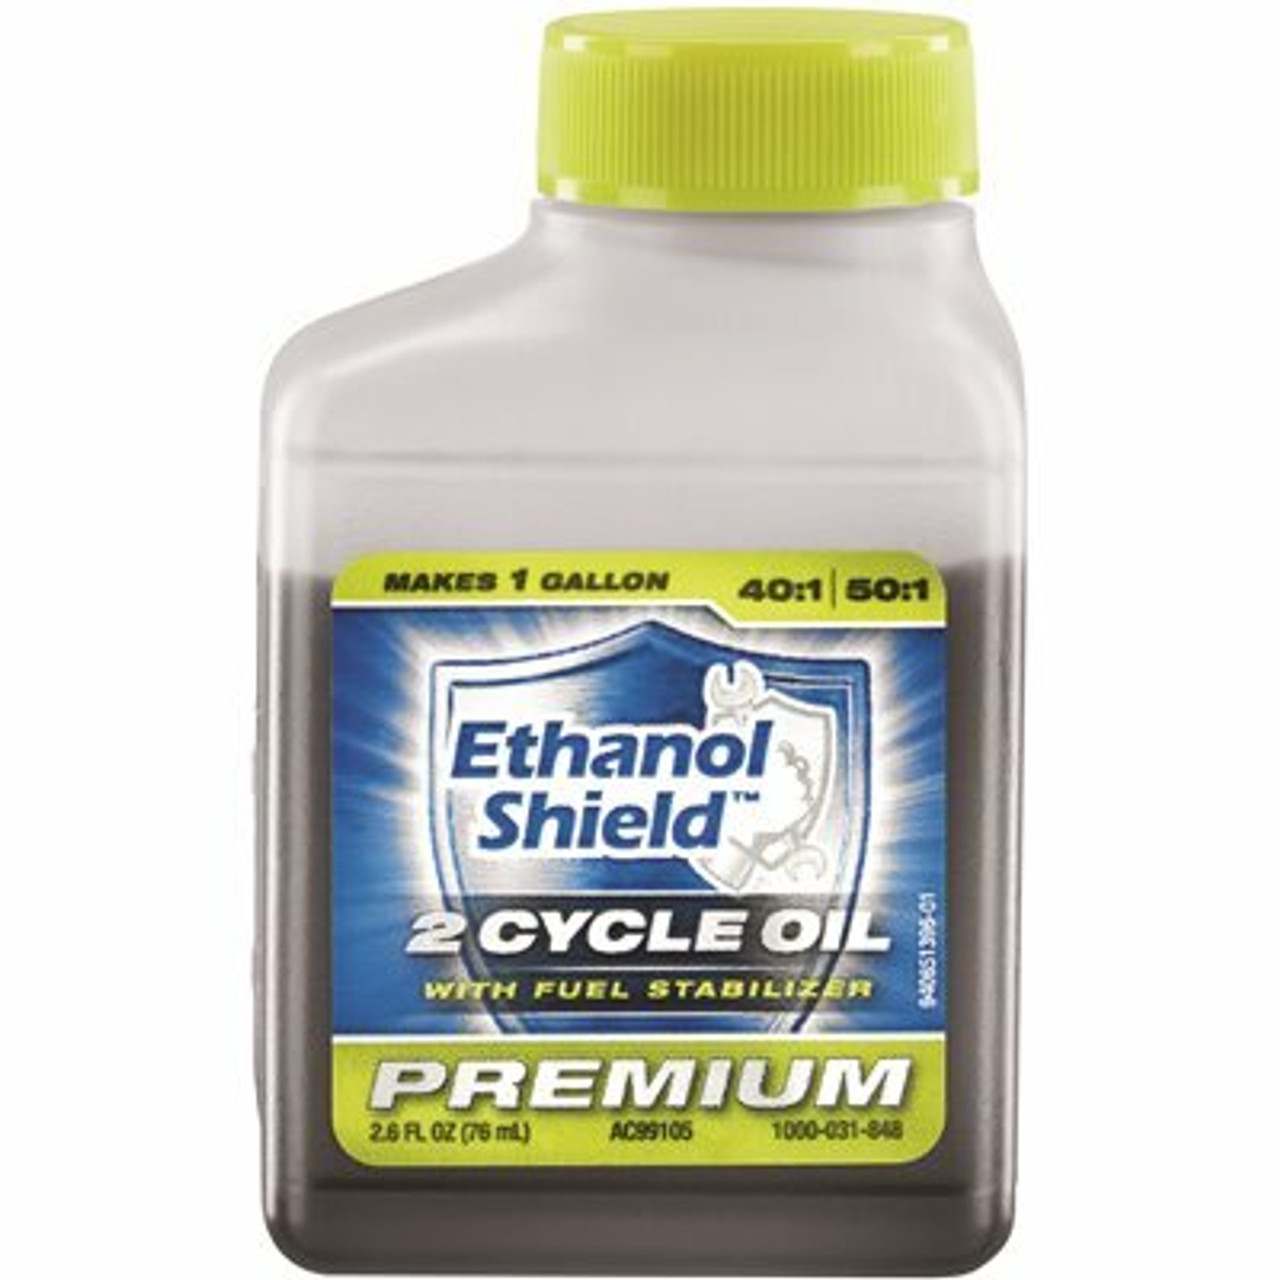 Ethanol Shield 2.6 Oz. 2-Cycle Oil